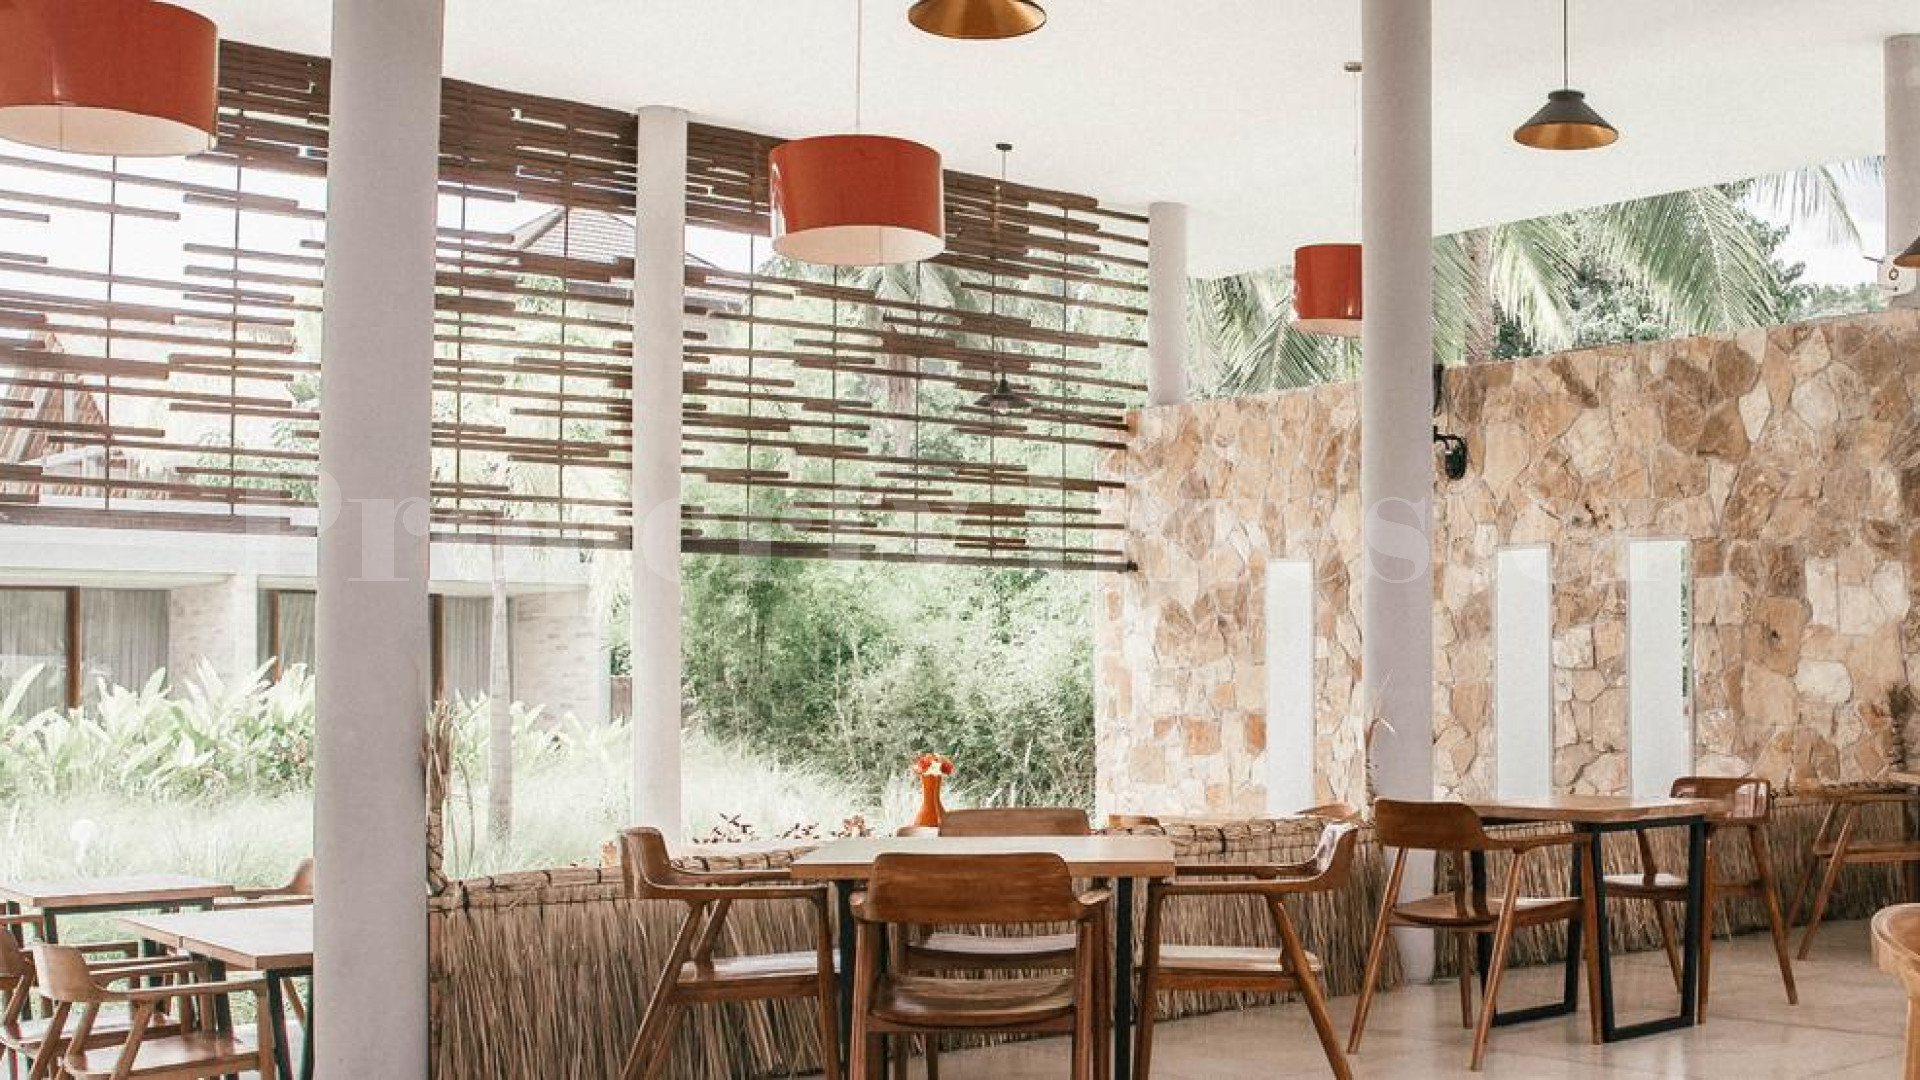 Бутик отель на 33 номера с готовым планом по расширению в Ломбок, Индонезия